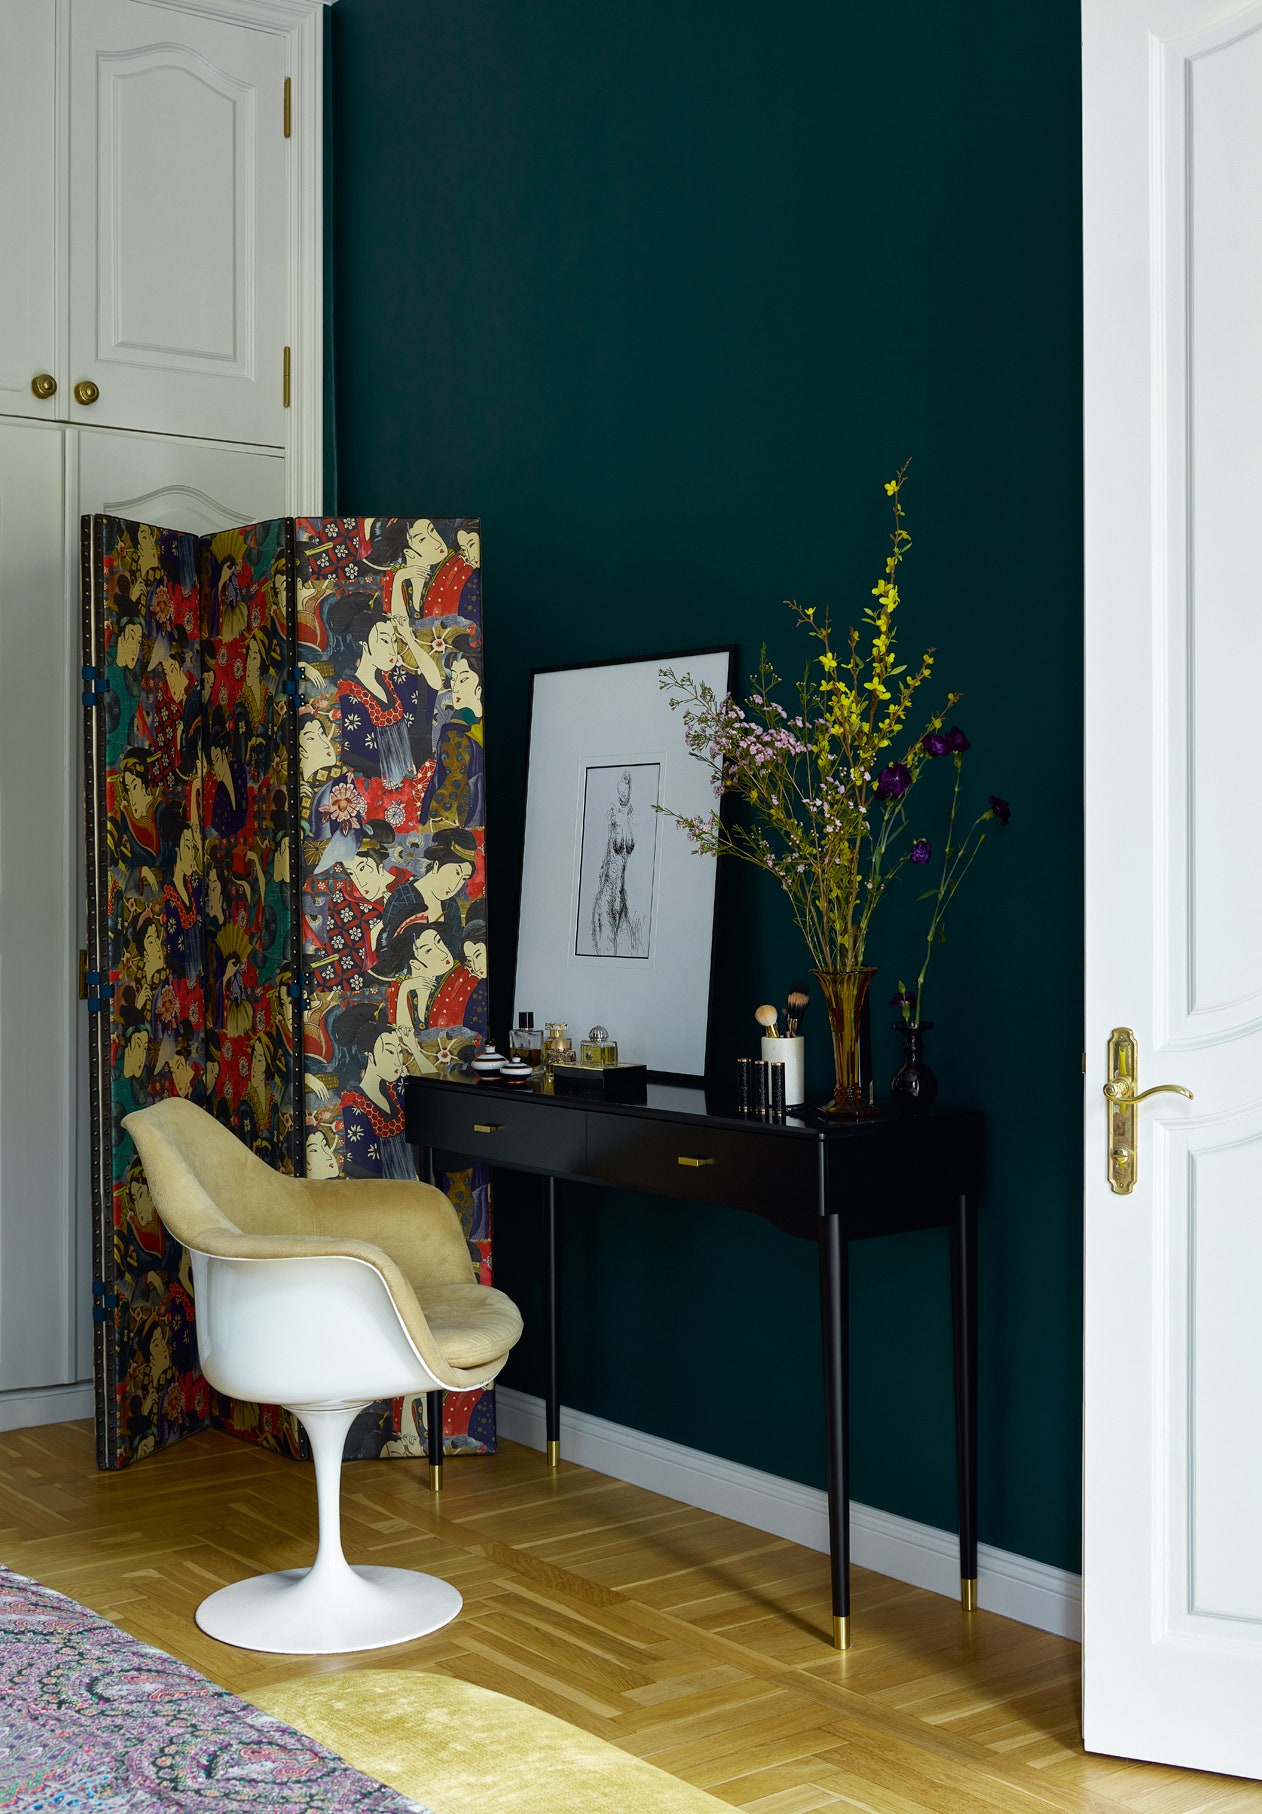 Фрагмент спальни. Консоль La Redoute винтажное кресло Tulip по дизайну Ээро Сааринена винтажная ширма.